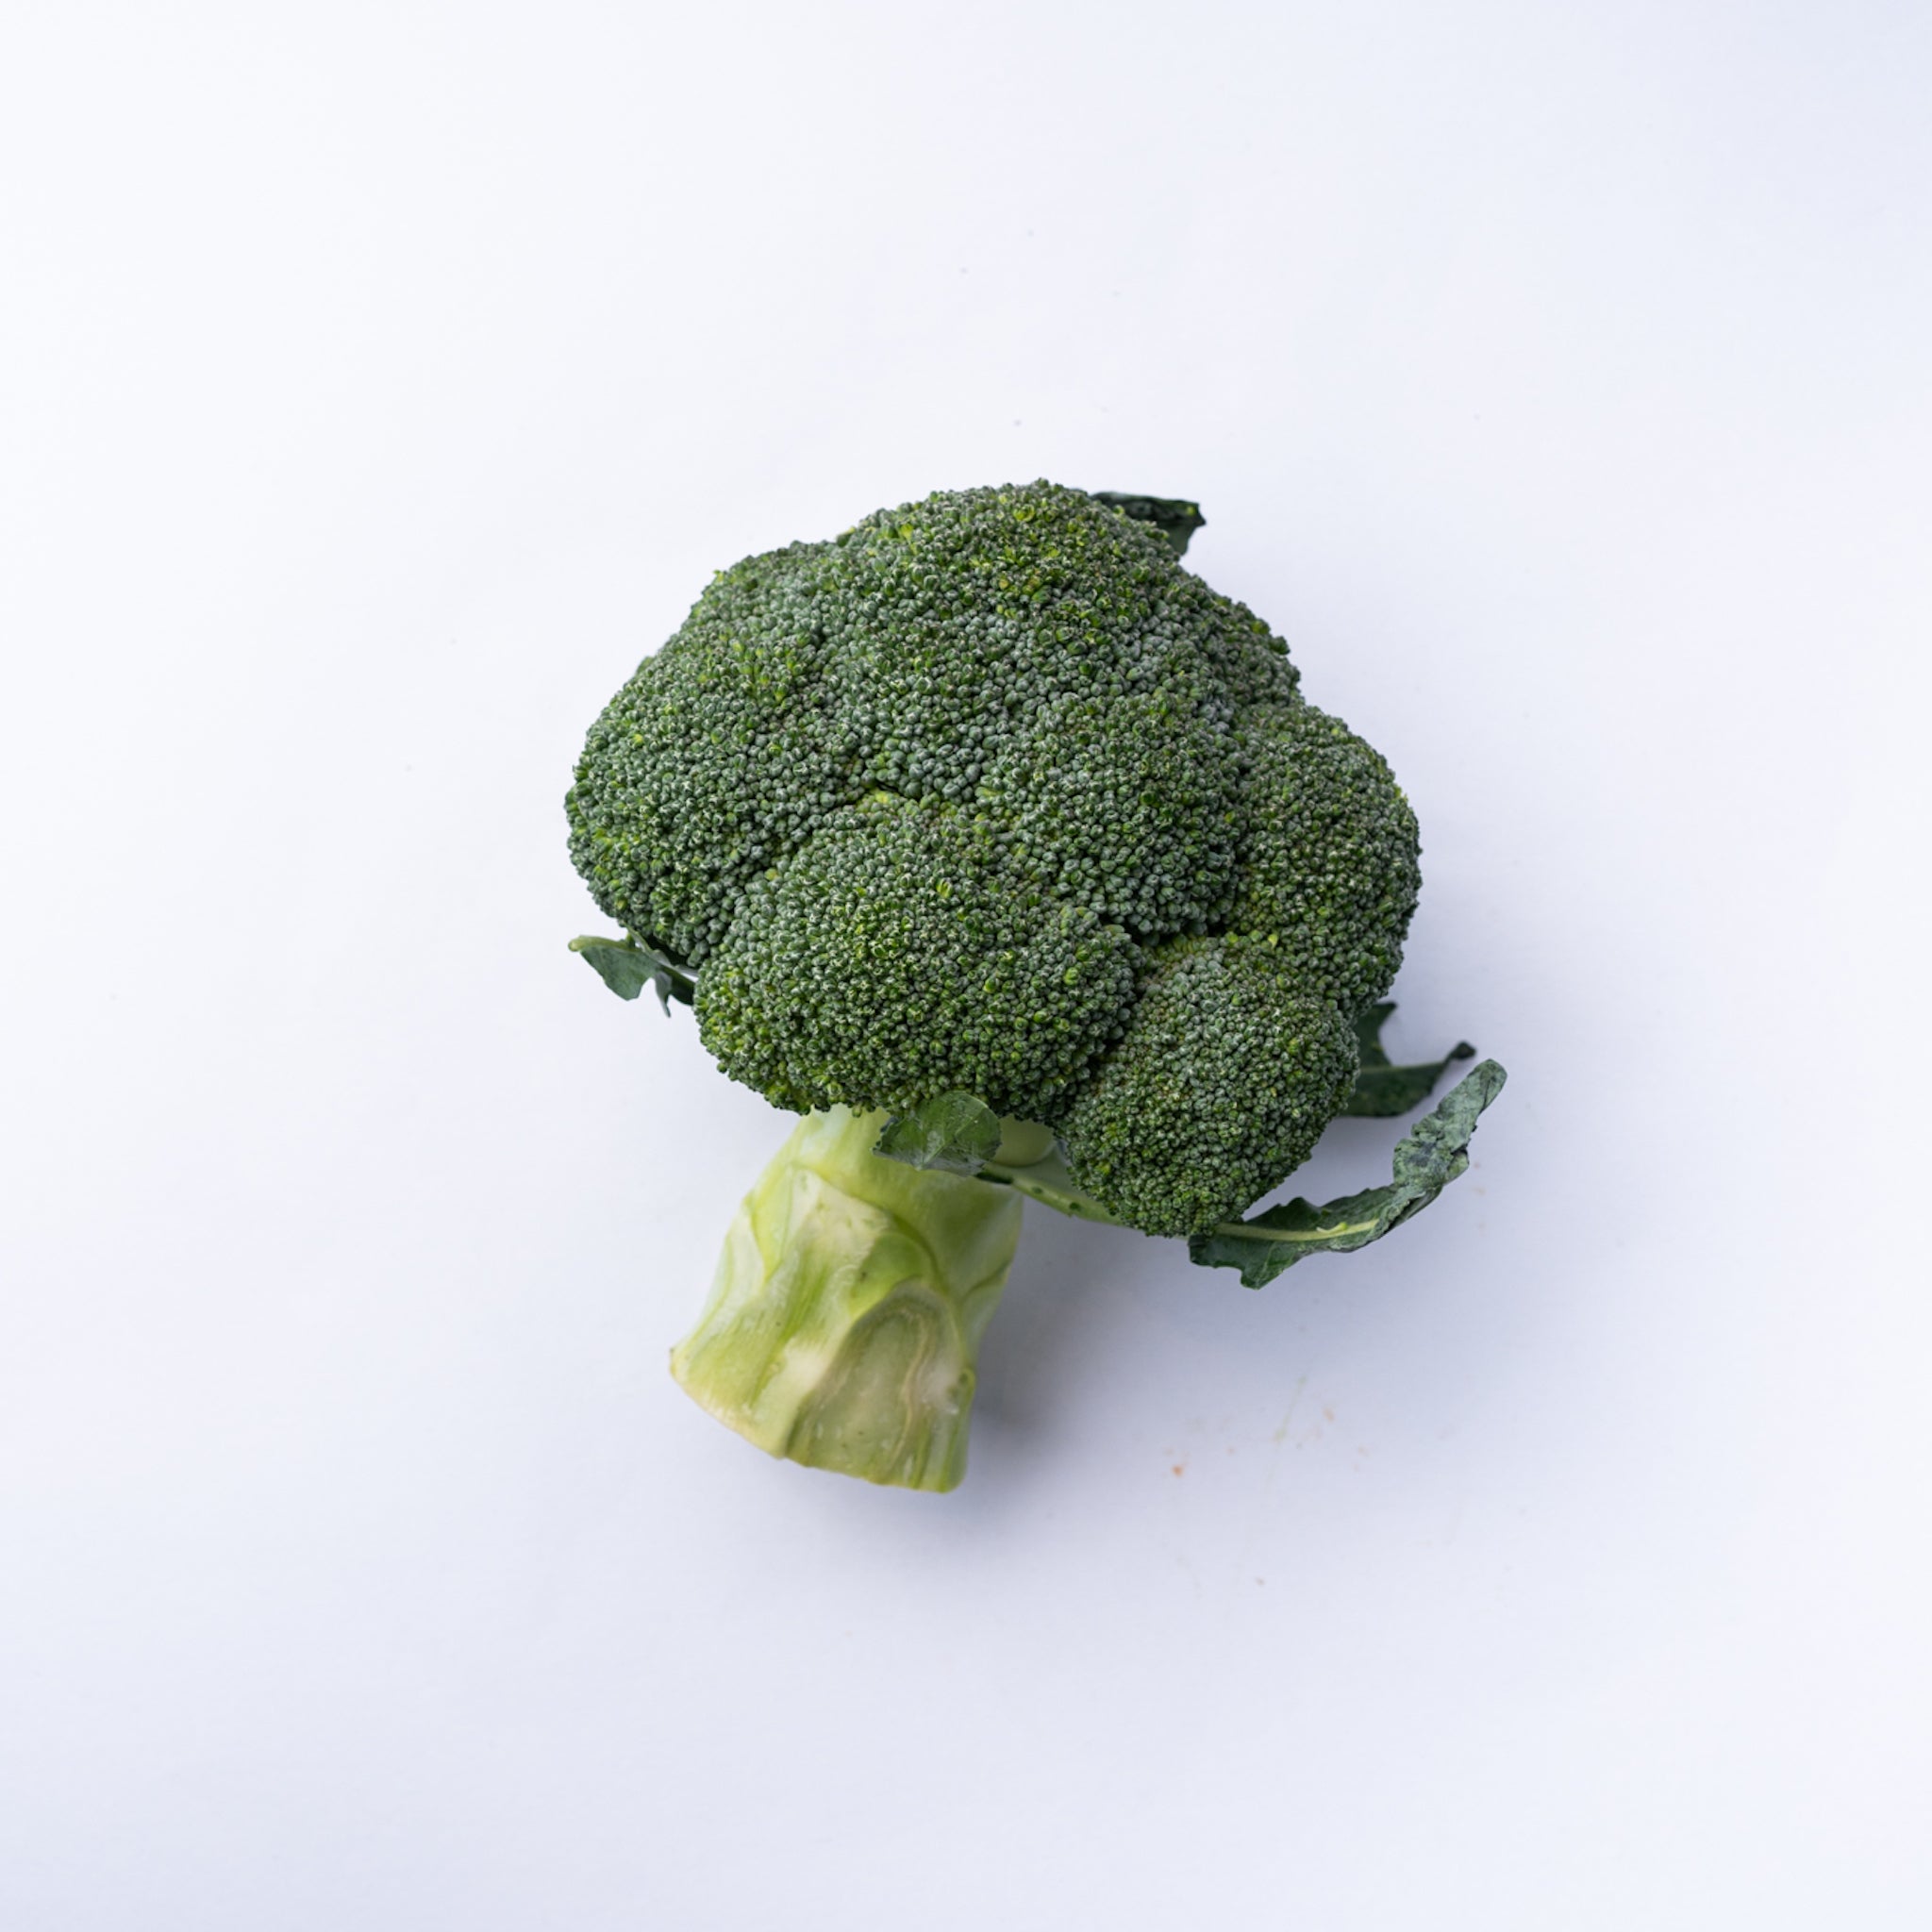 Raw broccoli a whole head.